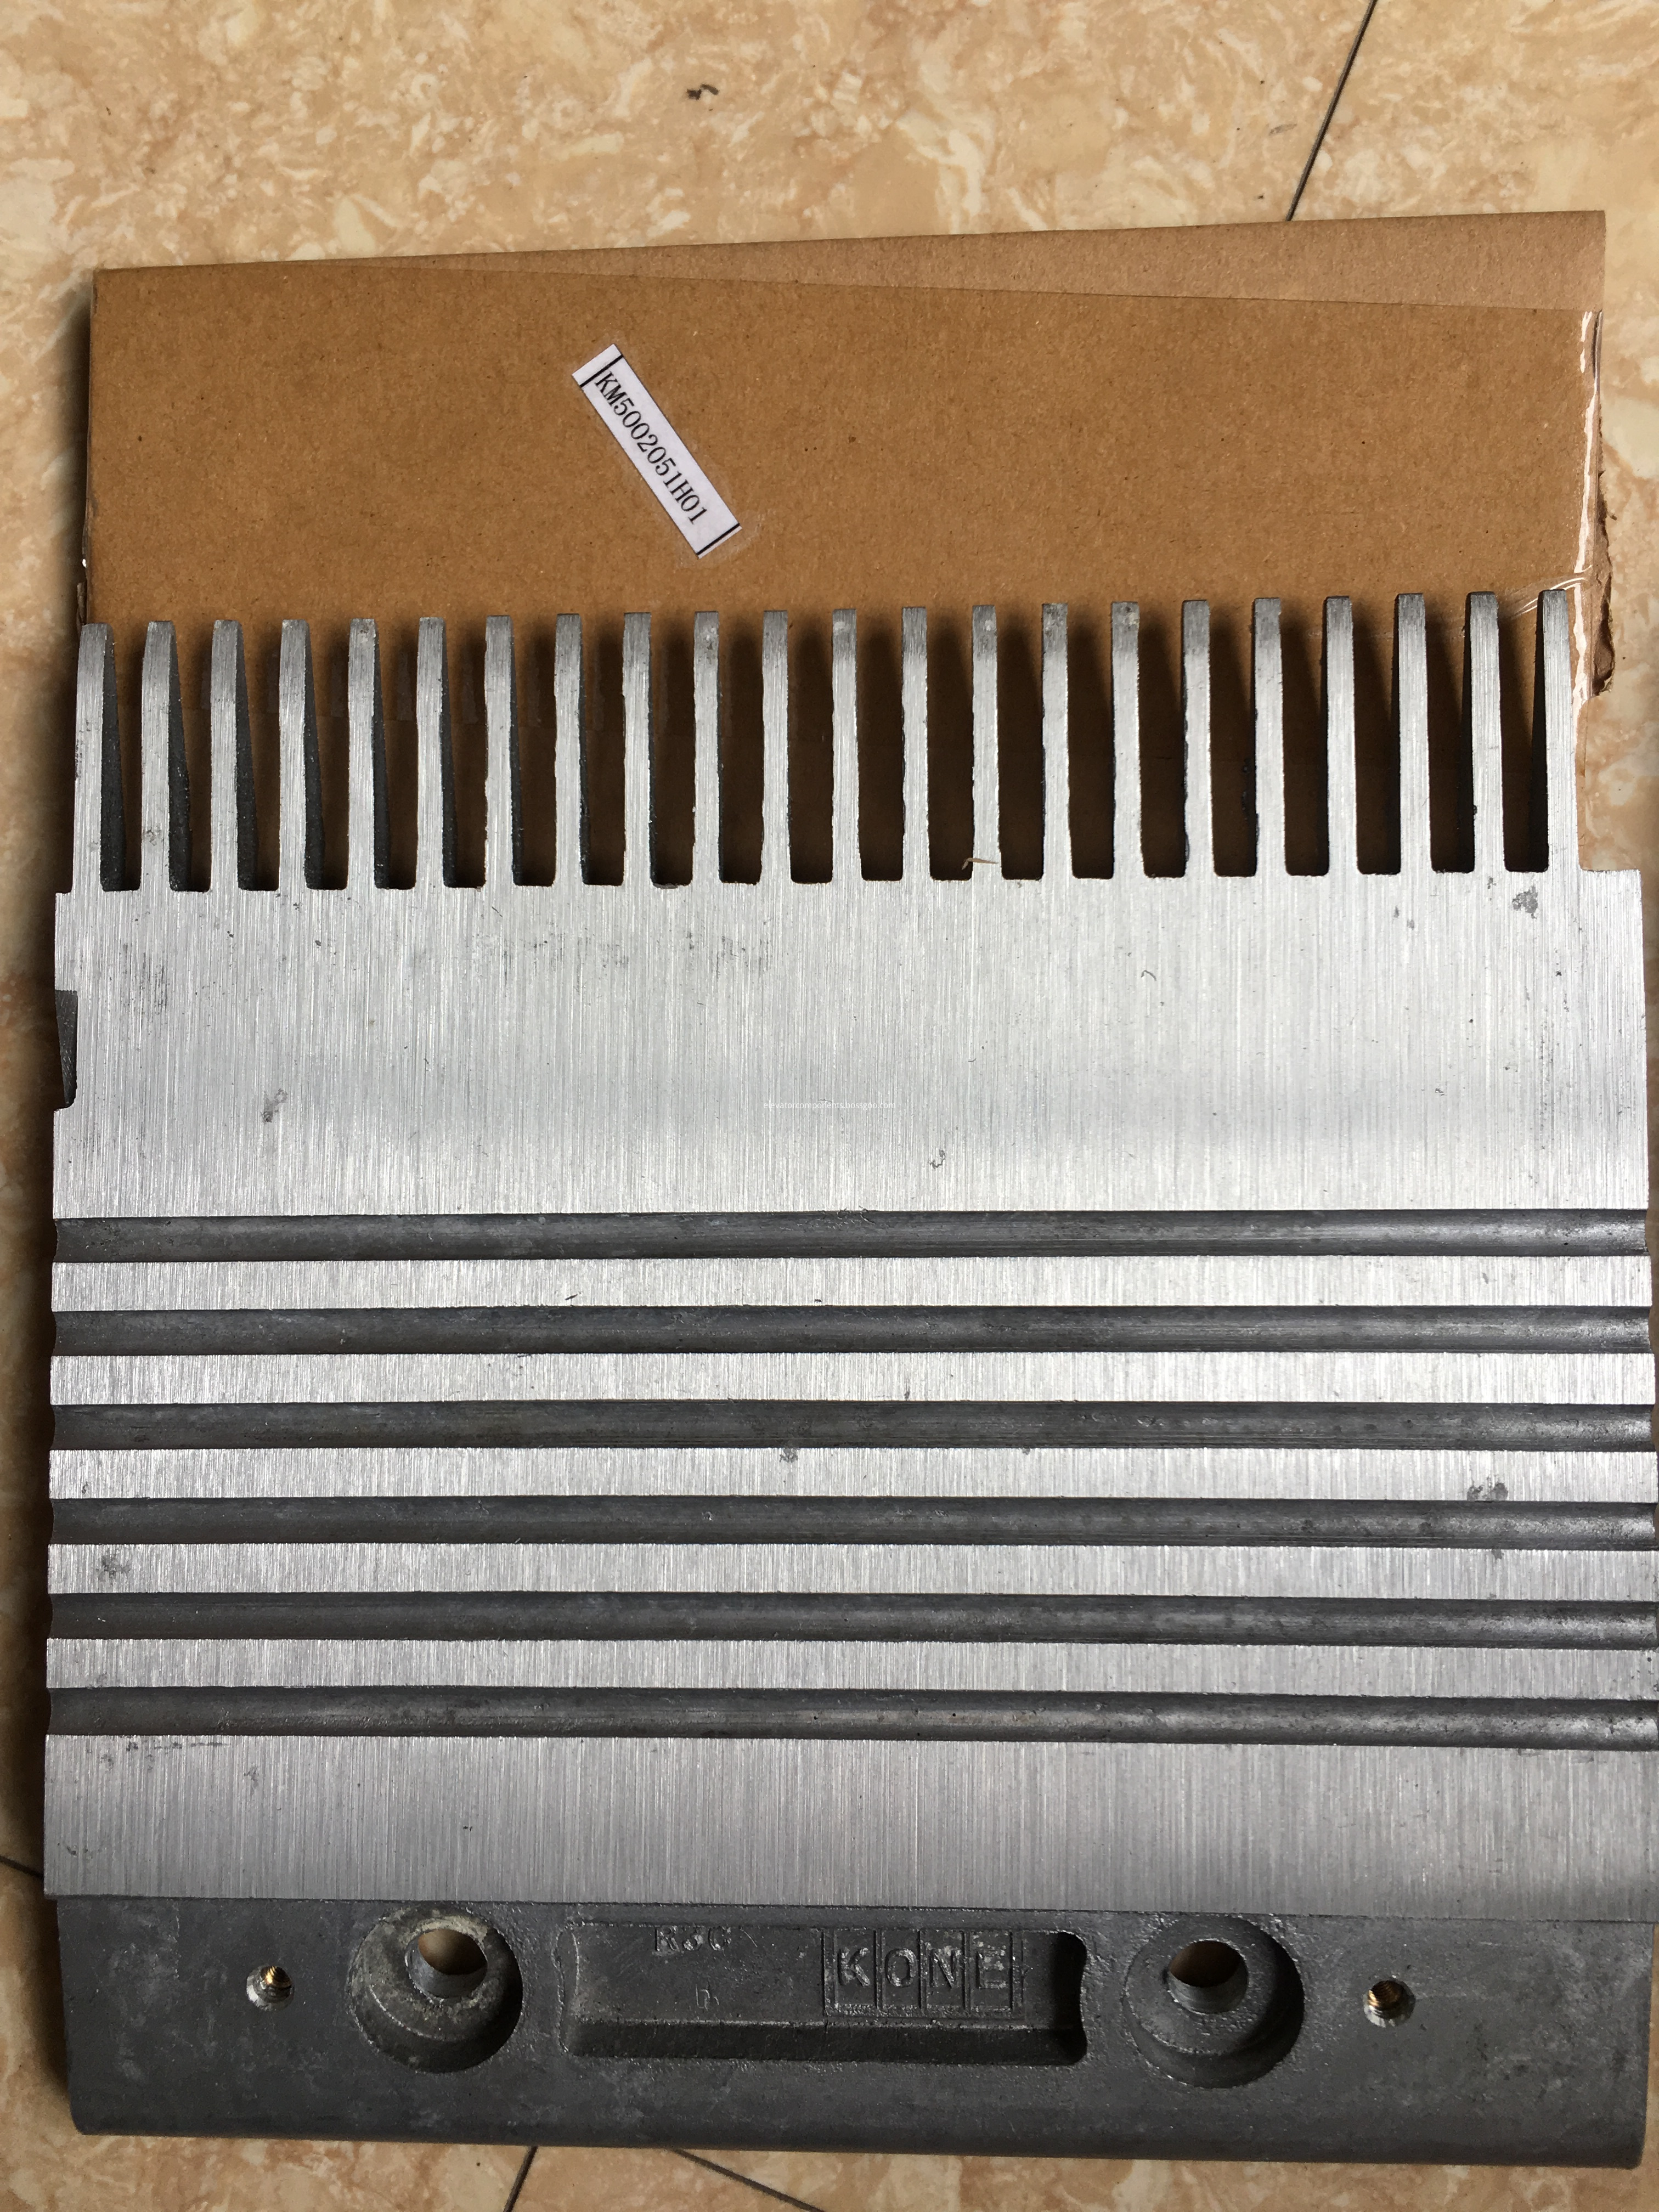 R3C Aluminium Alloy Combs for KONE Escalators, Right